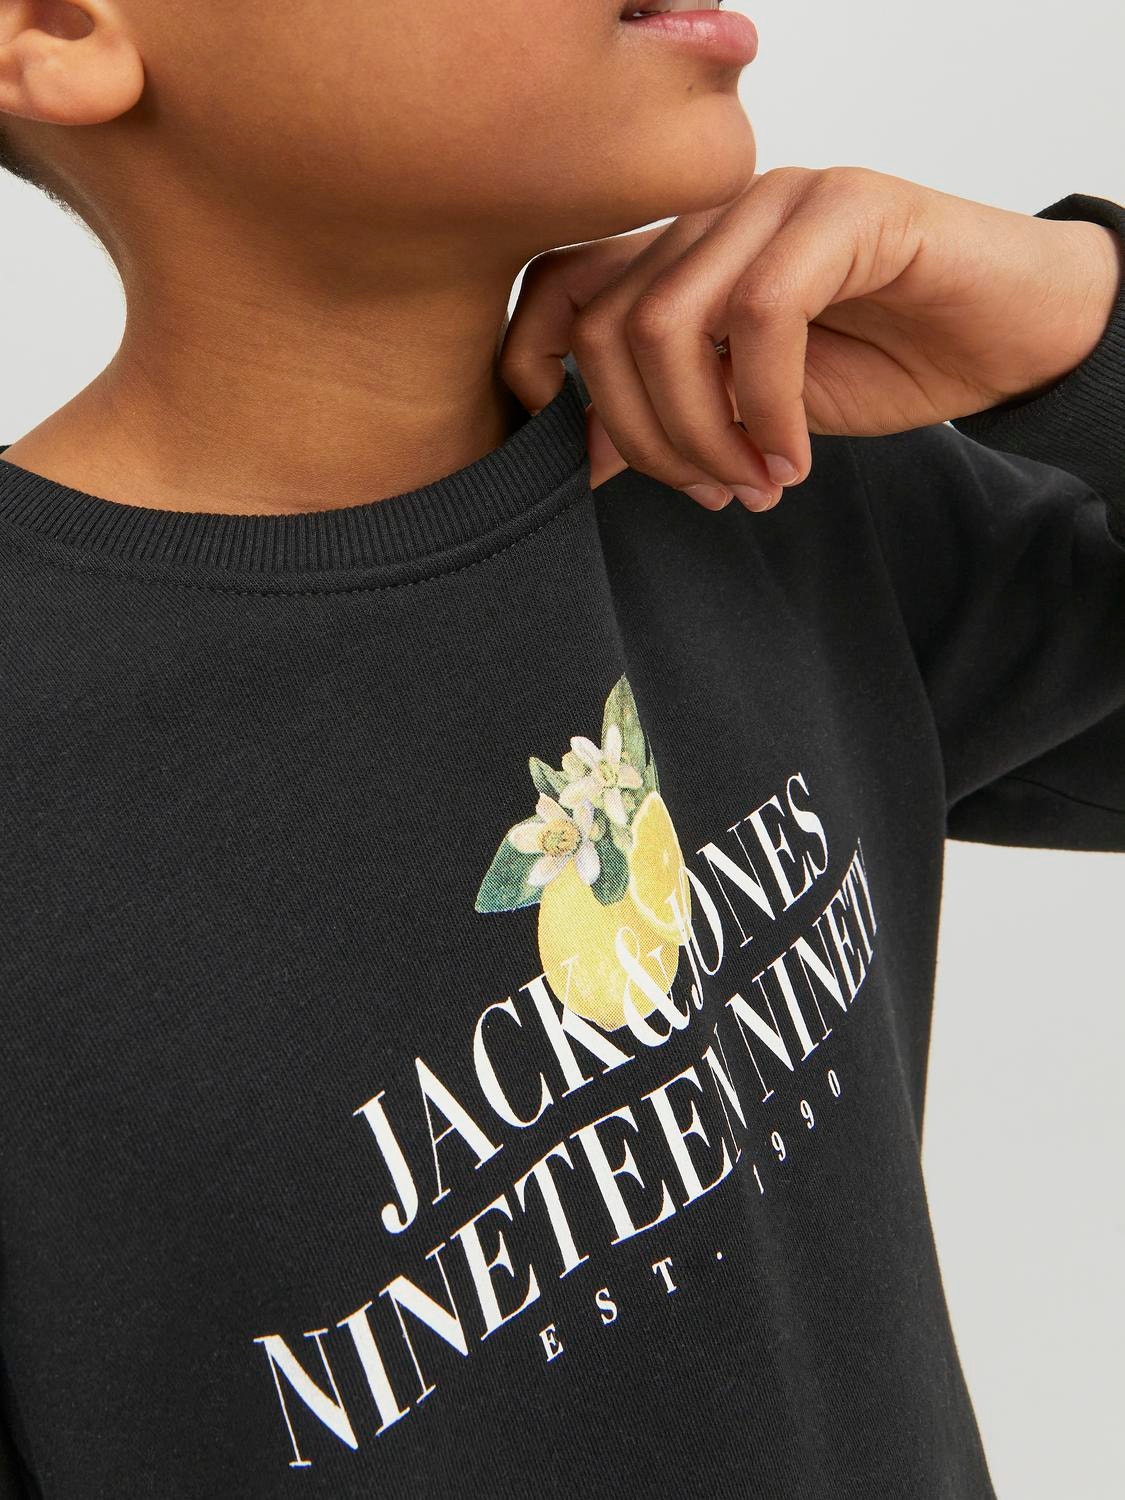 Jack & Jones Logo Sweatshirt mit Rundhals Für jungs -Black - 12230705